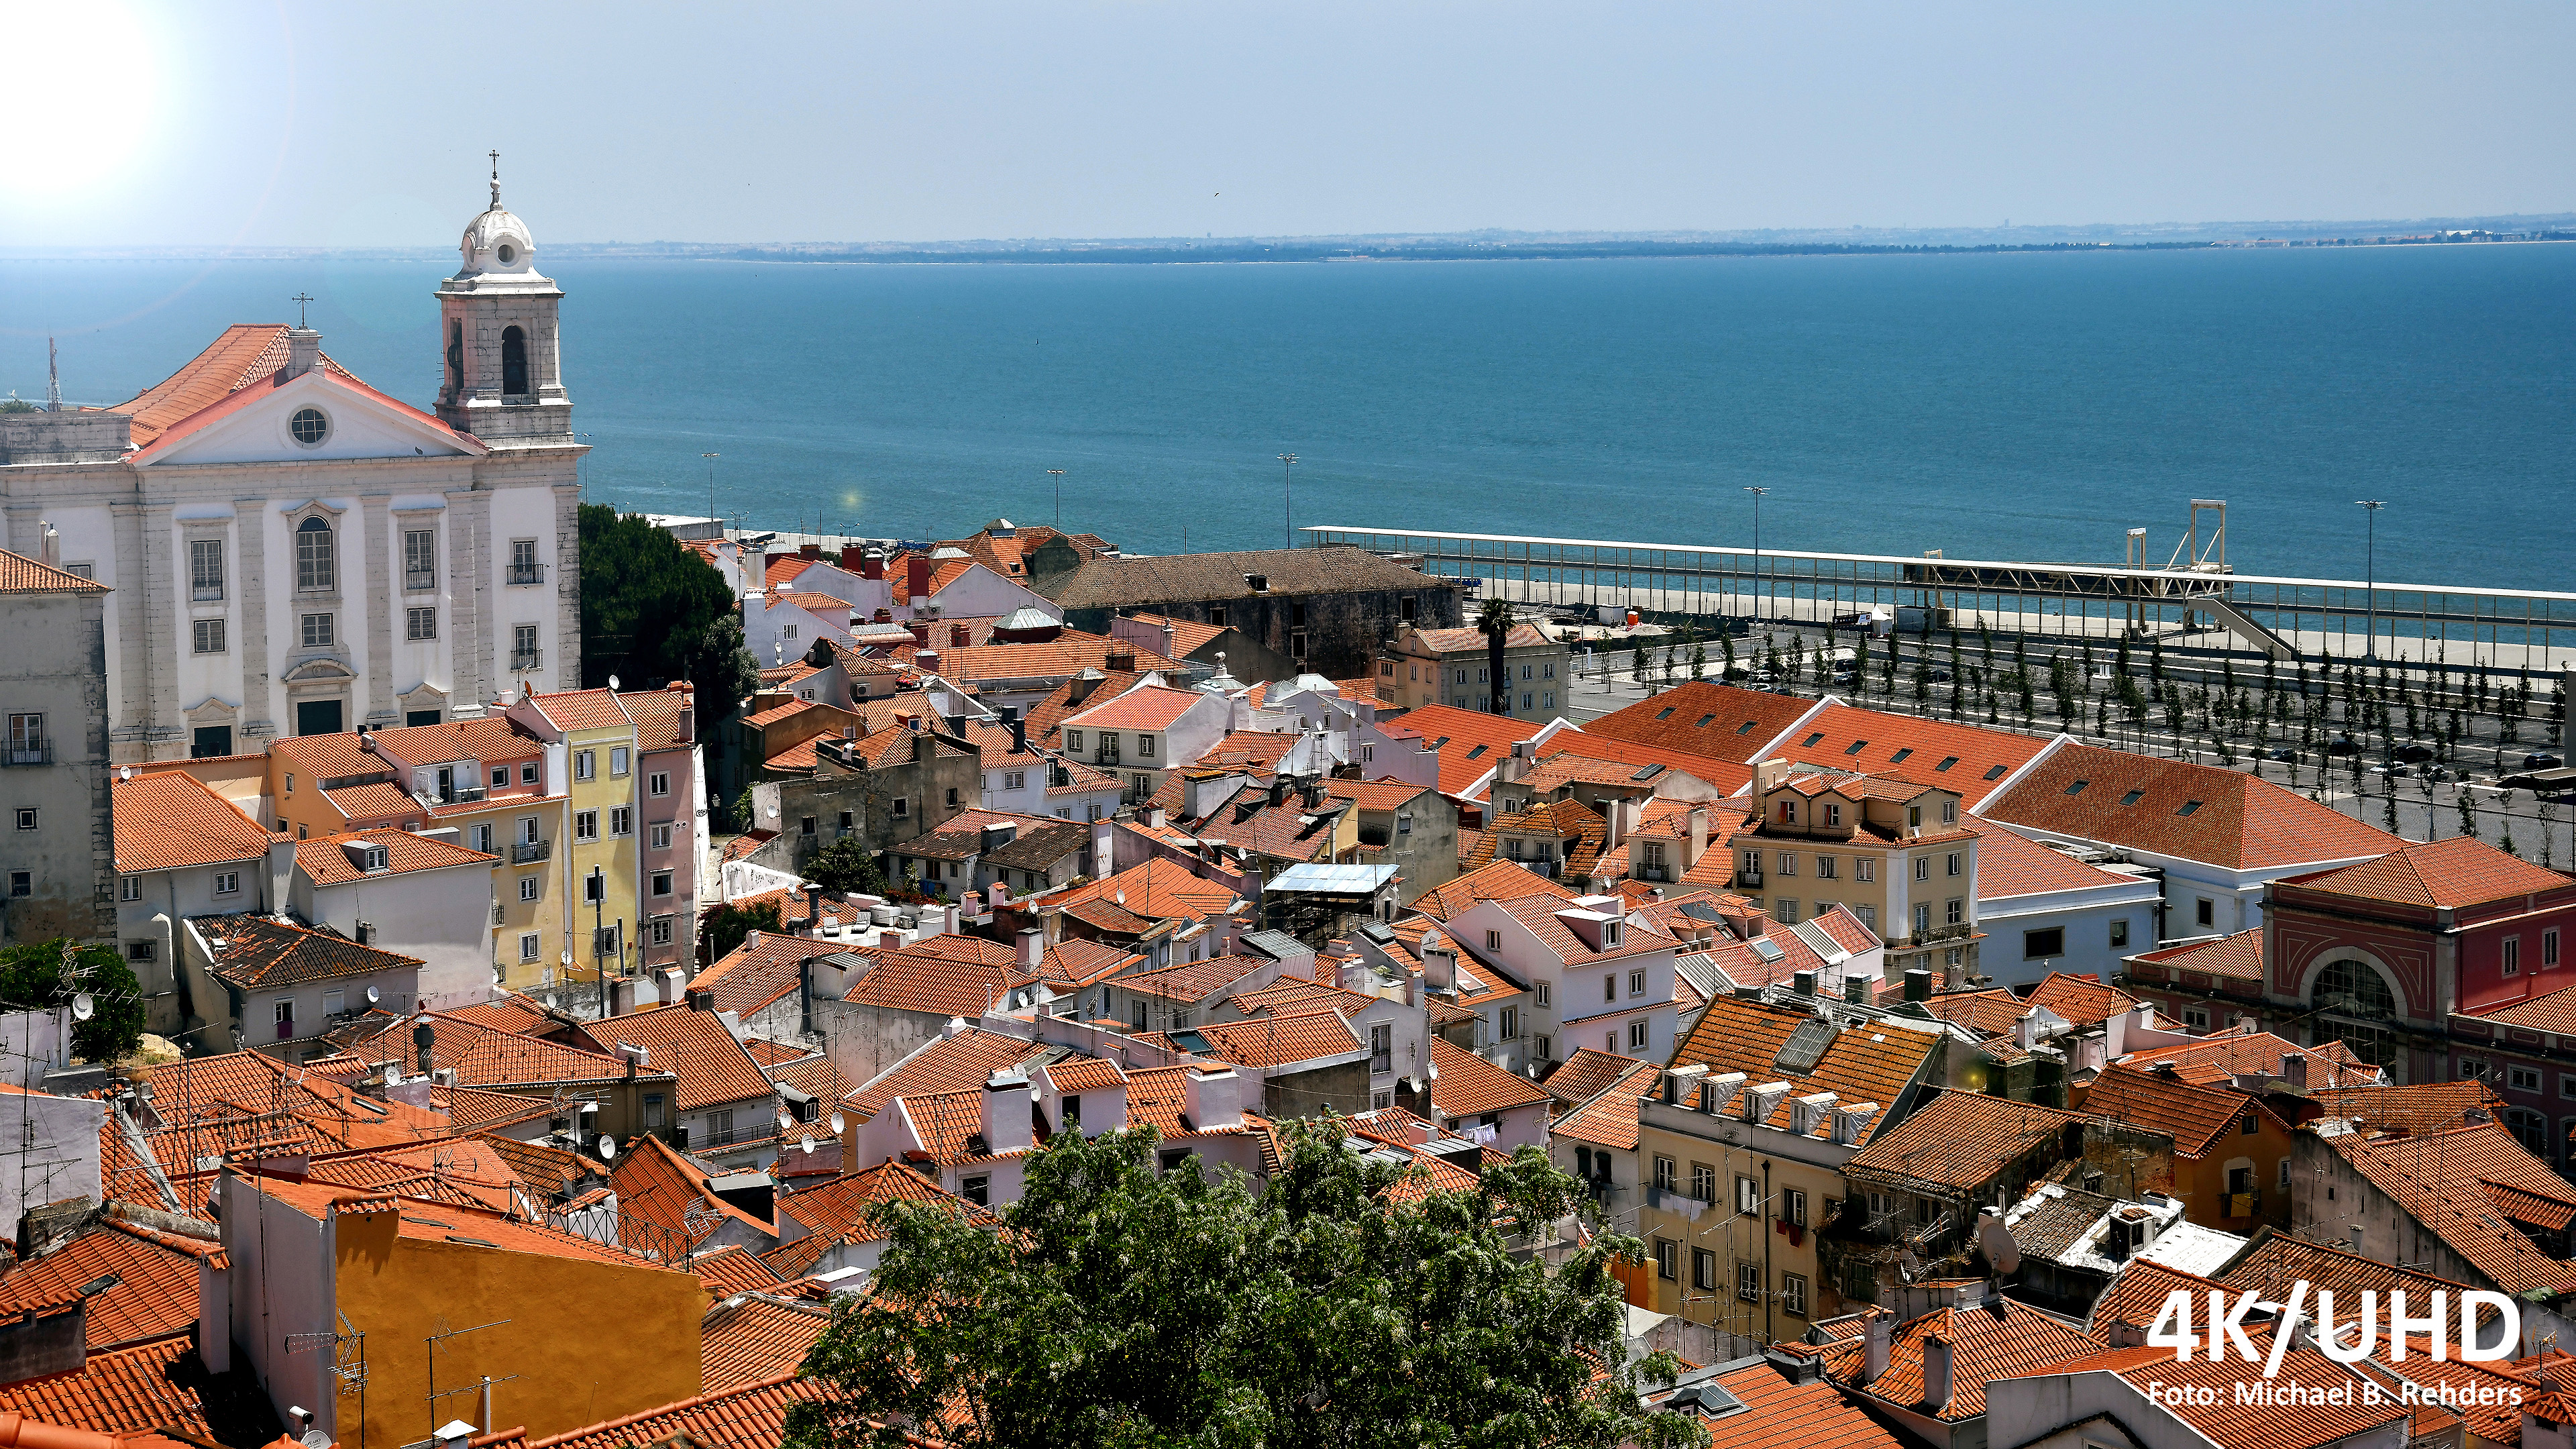 Foto: Michael B. Rehders - Die Panoramaaufnahme entstand in Lissabon. Mit einem Gamma 2.4 wird das Bild originalgetreu reproduziert, weil diese Aufnahme mit diesem Gammawert erstellt wurde.